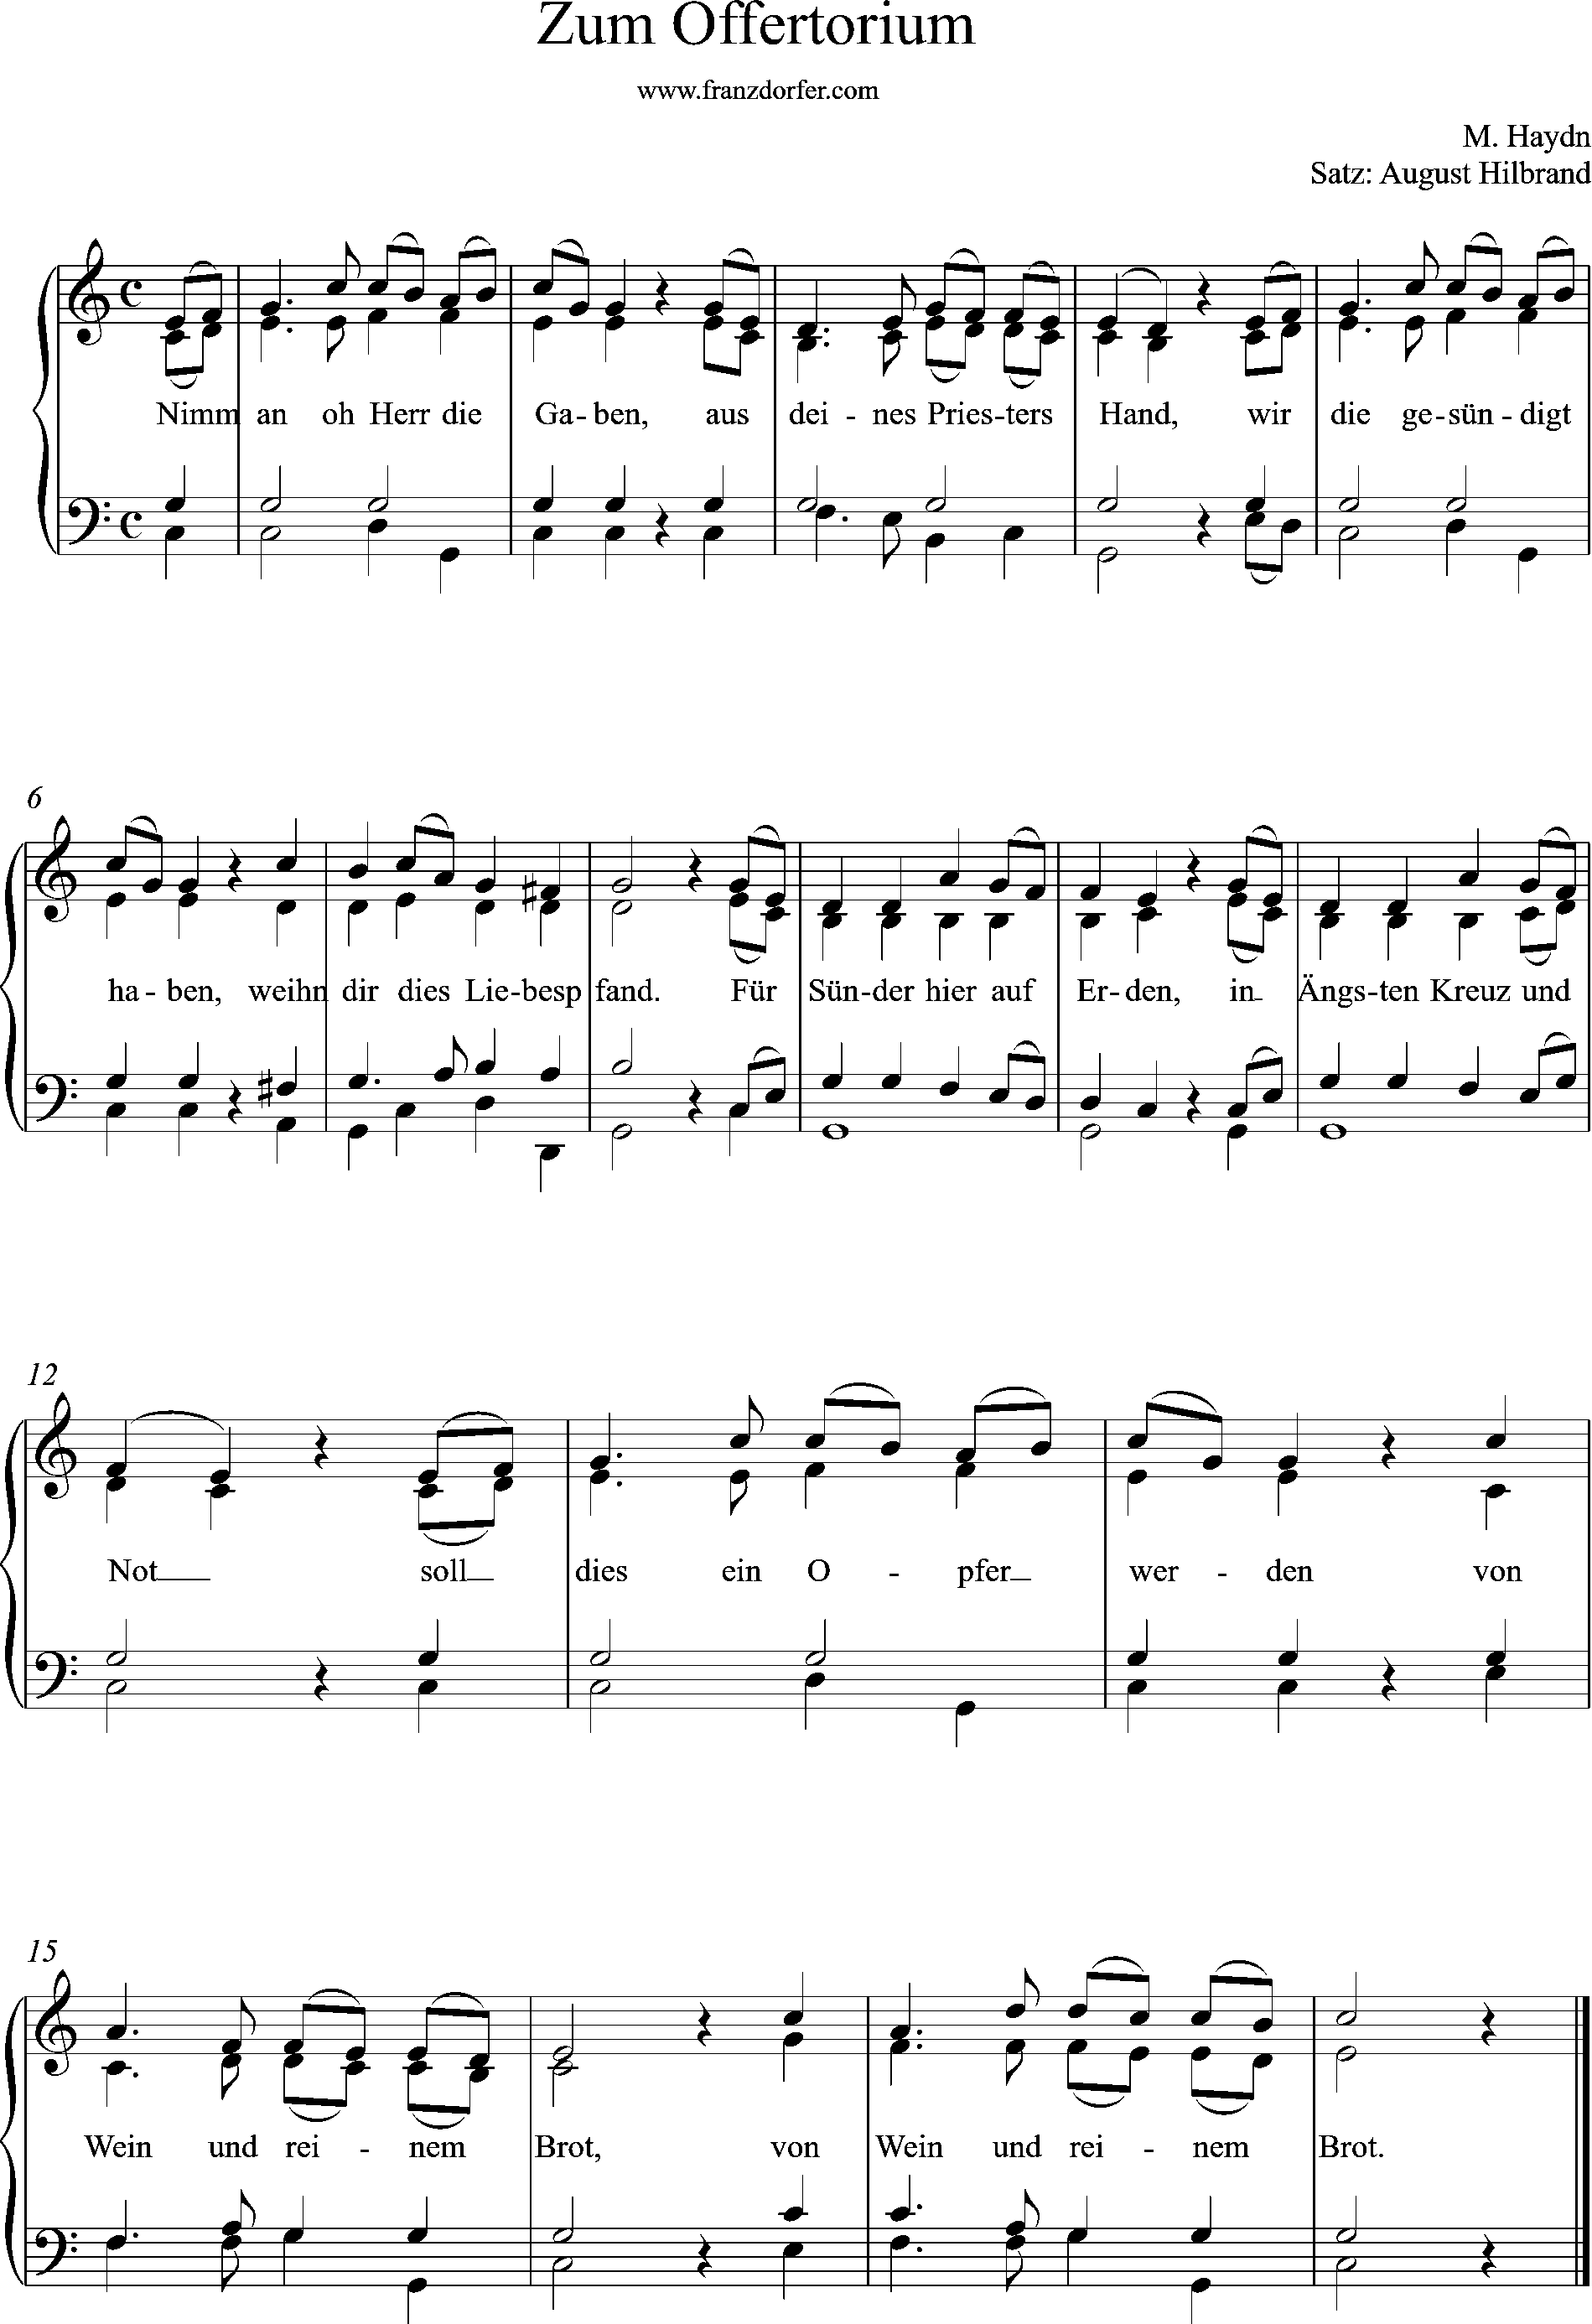 Orgel noten, 4stimmiger Satz, Zum Offertoroum, Haydn Messe